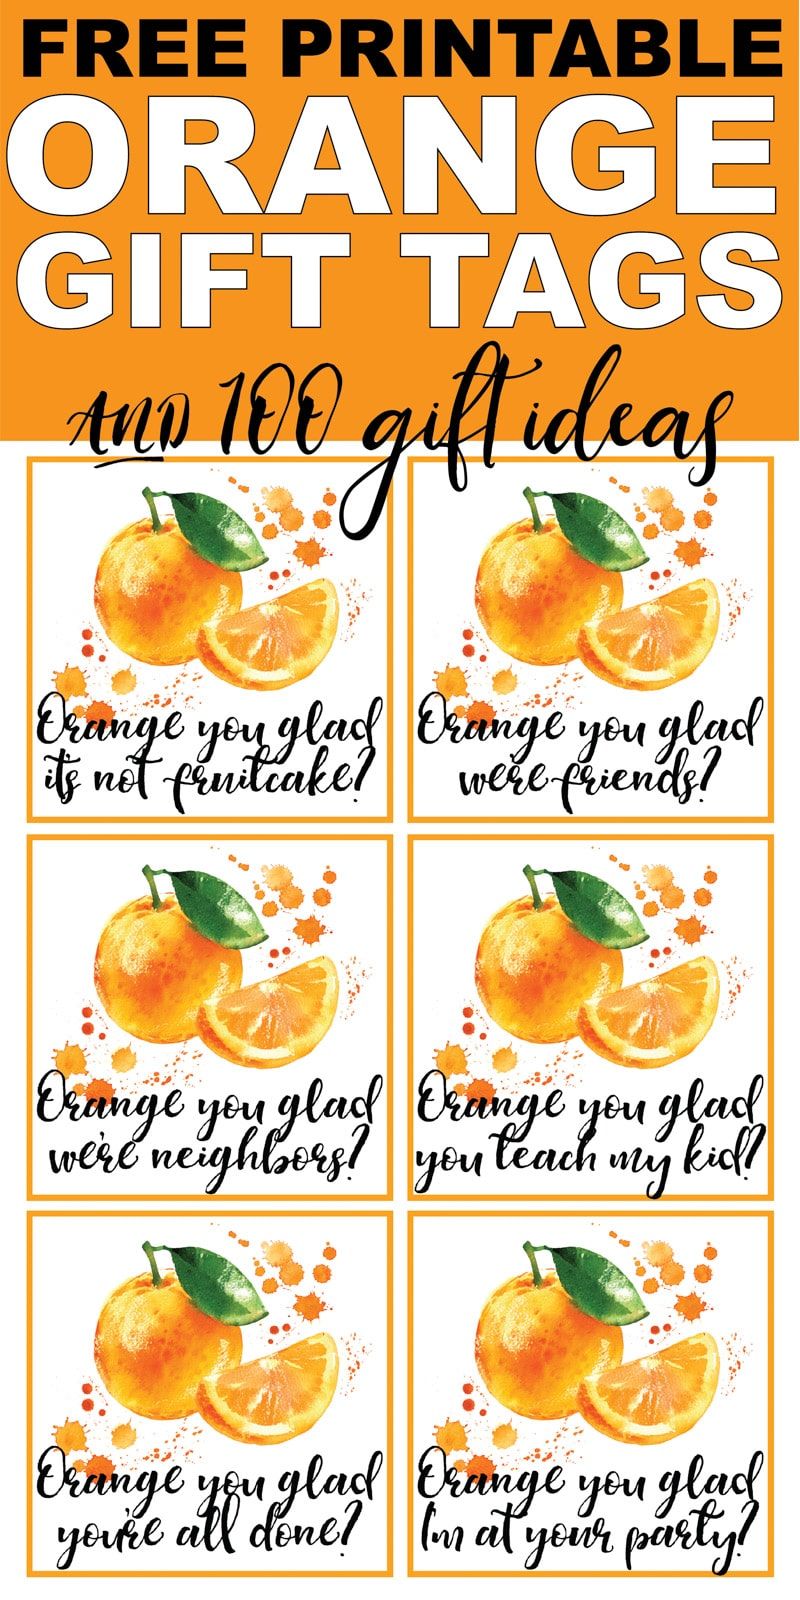 Tyto oranžové štítky na dárky, které jste rádi, jsou tak roztomilé! Přidejte je k některým z oranžových nápadů na dárky pro jeden z nejlepších DIY poděkování nebo sváteční dárek! Ideální pro dárky od sousedů, dárky pro učitele nebo dokonce dárek k narozeninám pro přítele!